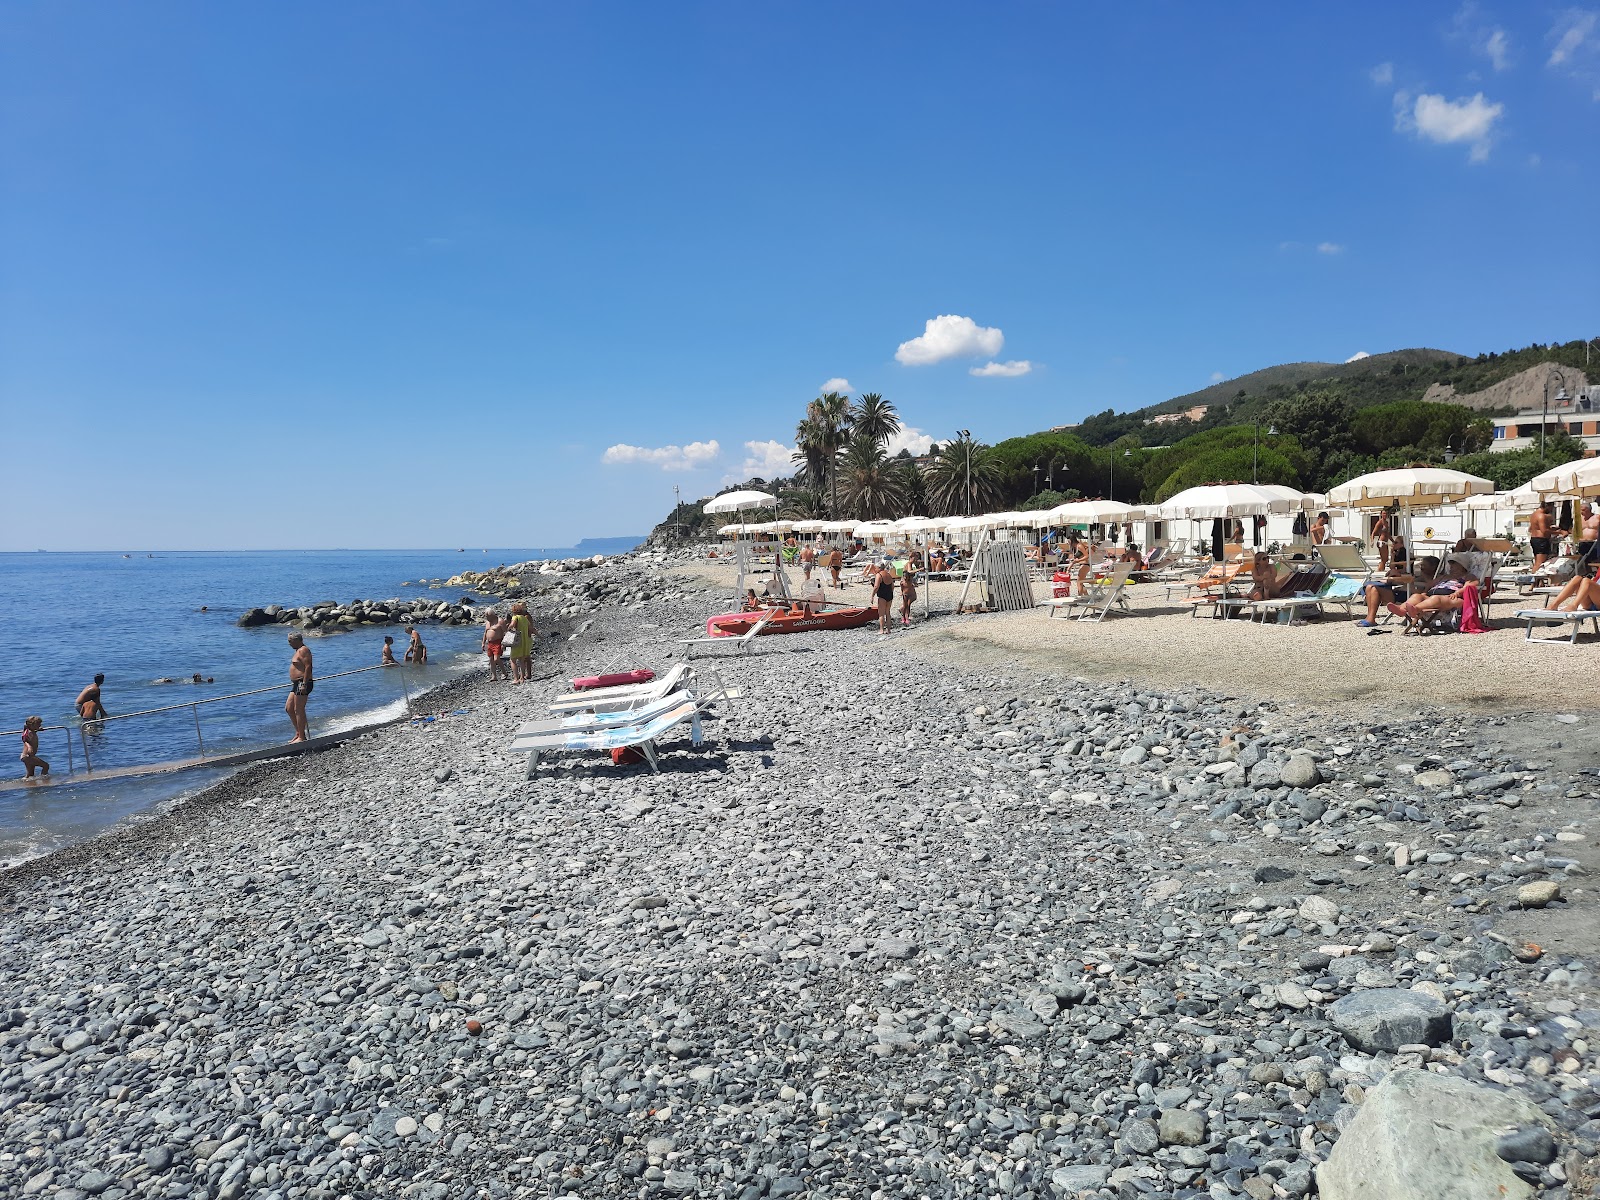 Zdjęcie Spiaggia Libera Carretta Cogoleto z powierzchnią piasek z kamykami